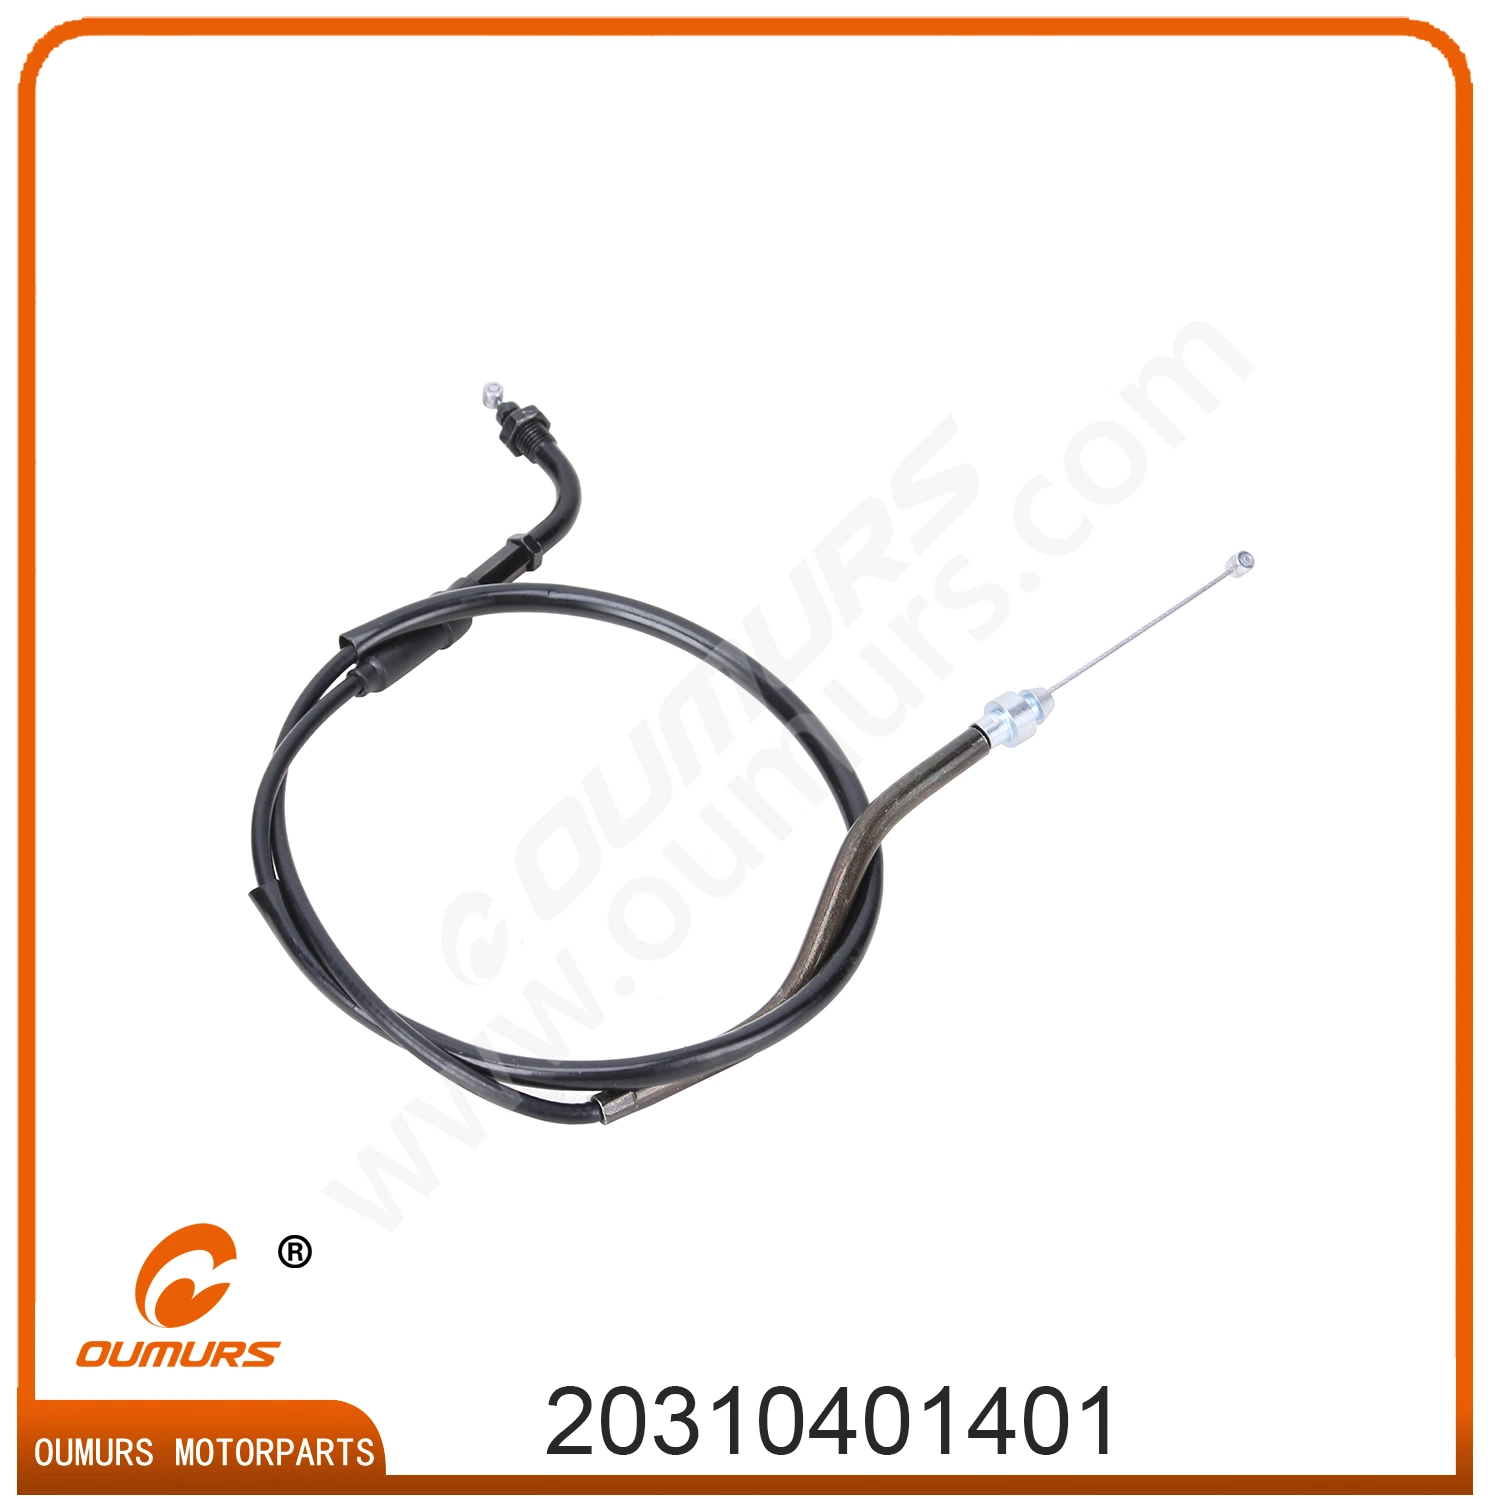 Motorrad-Teil-Drossel Cable Cable De Acelerador für Pulsar 200ns